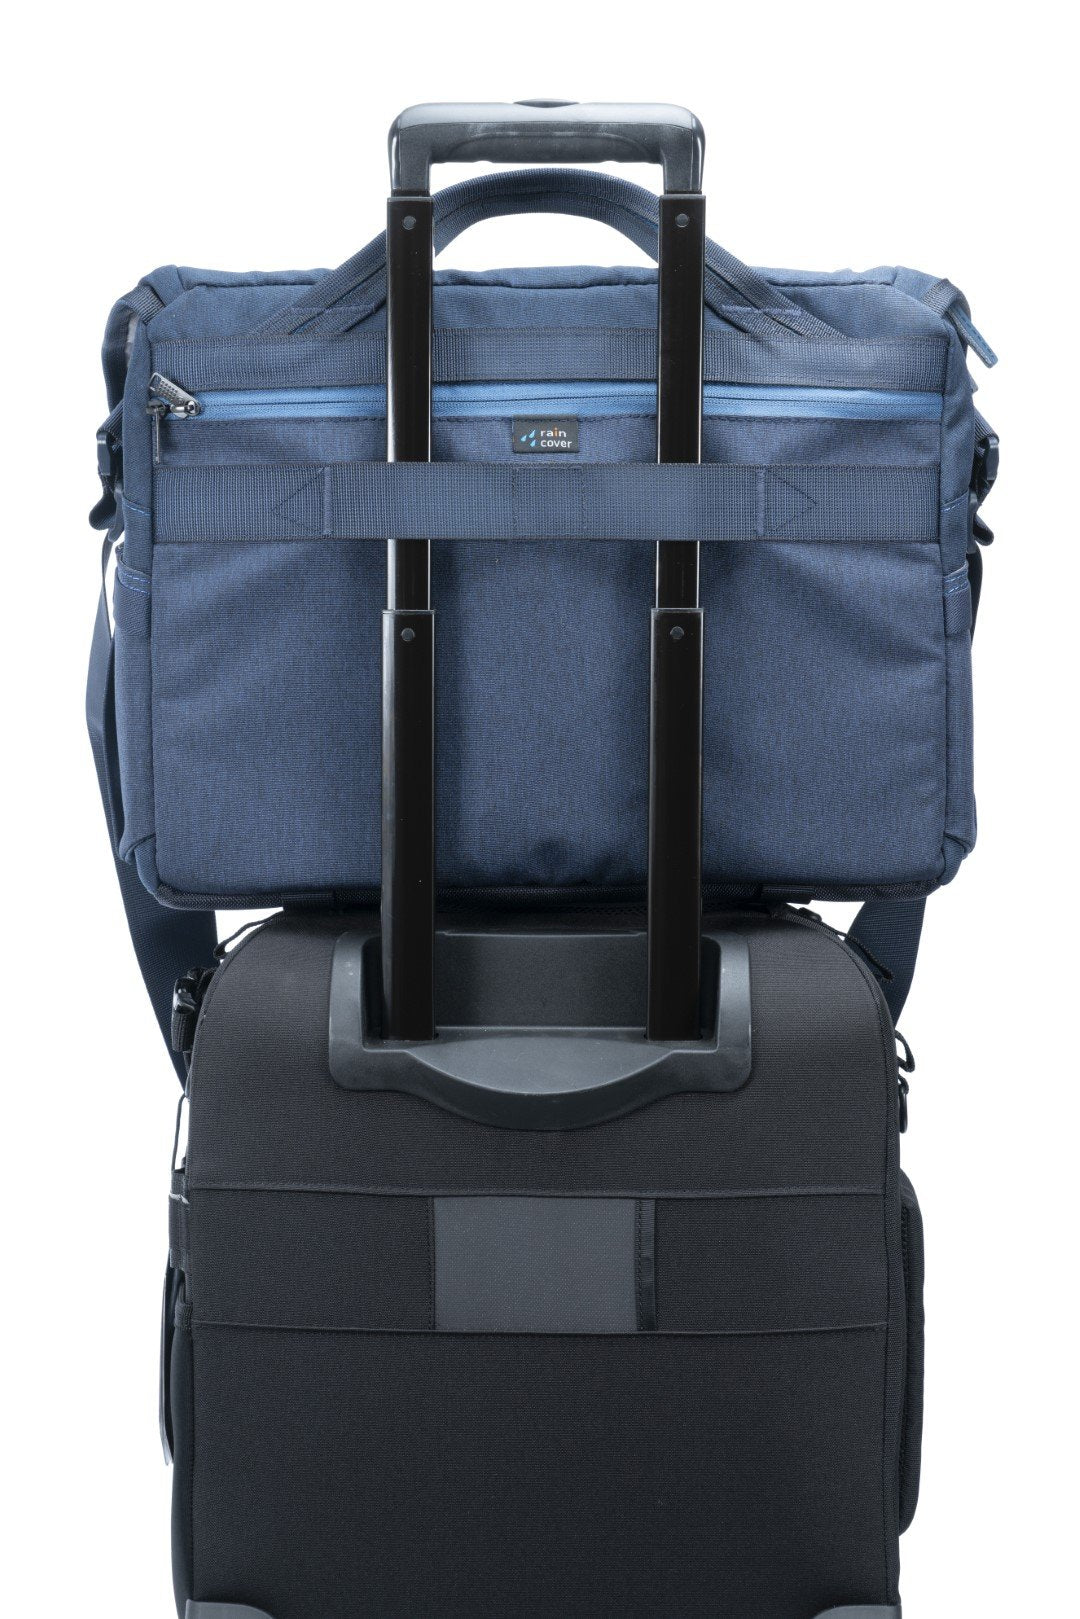 VEO RANGE 38 NV 17 Litre Shoulder Bag with Internal Travel Tripod Comp ...